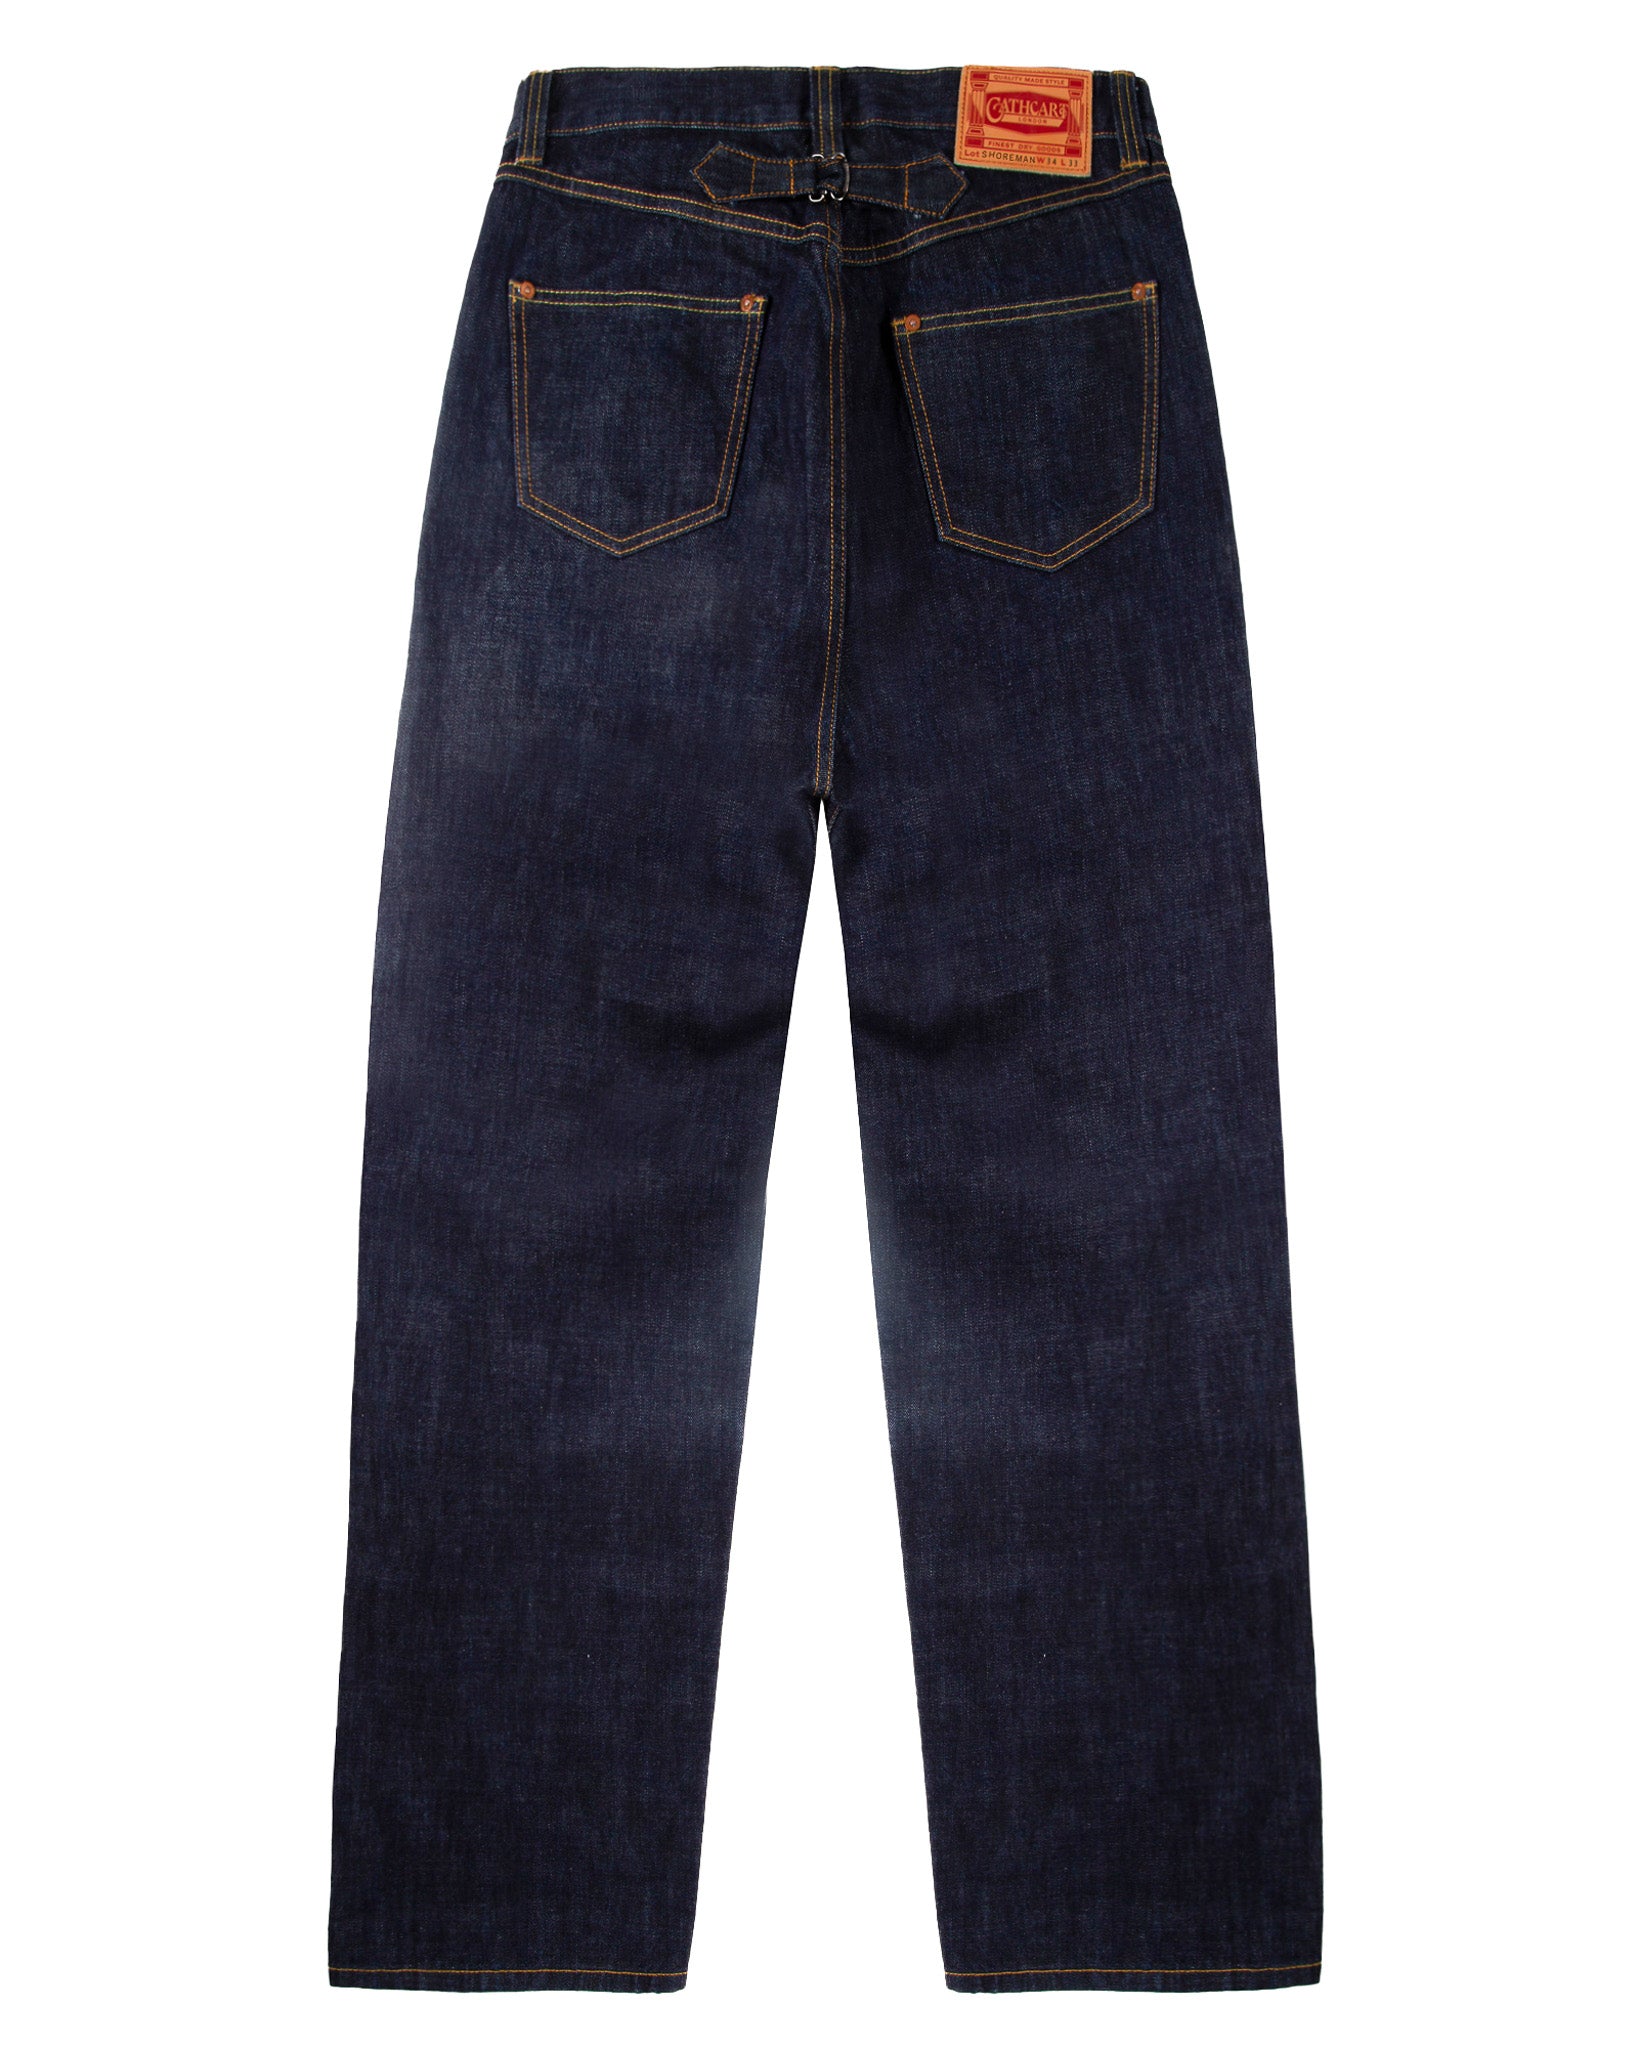 Shoreman Jeans